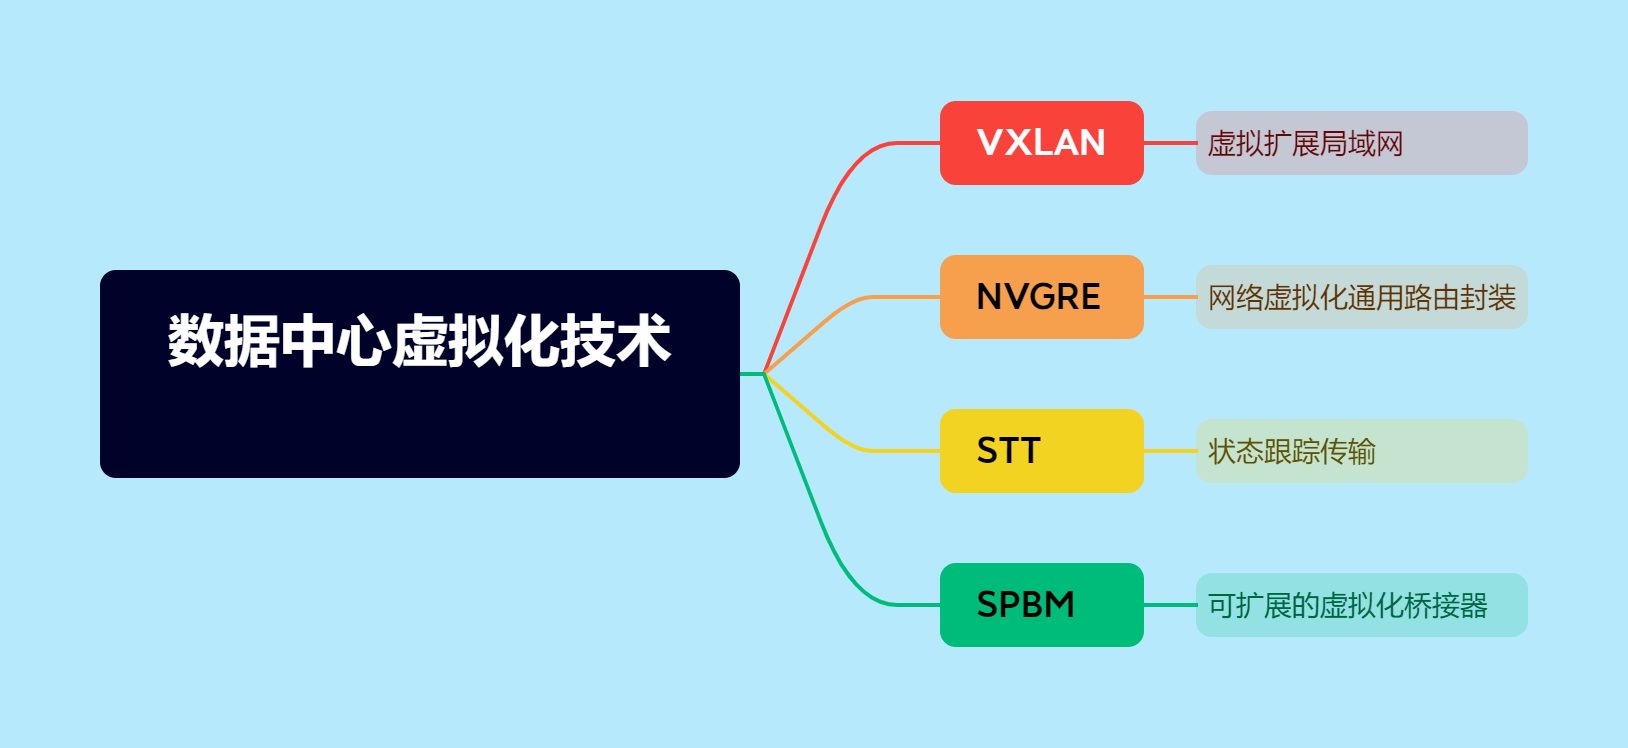 数据中心网络中的虚拟化技术：VXLAN、NVGRE、STT和SPBM-不念博客